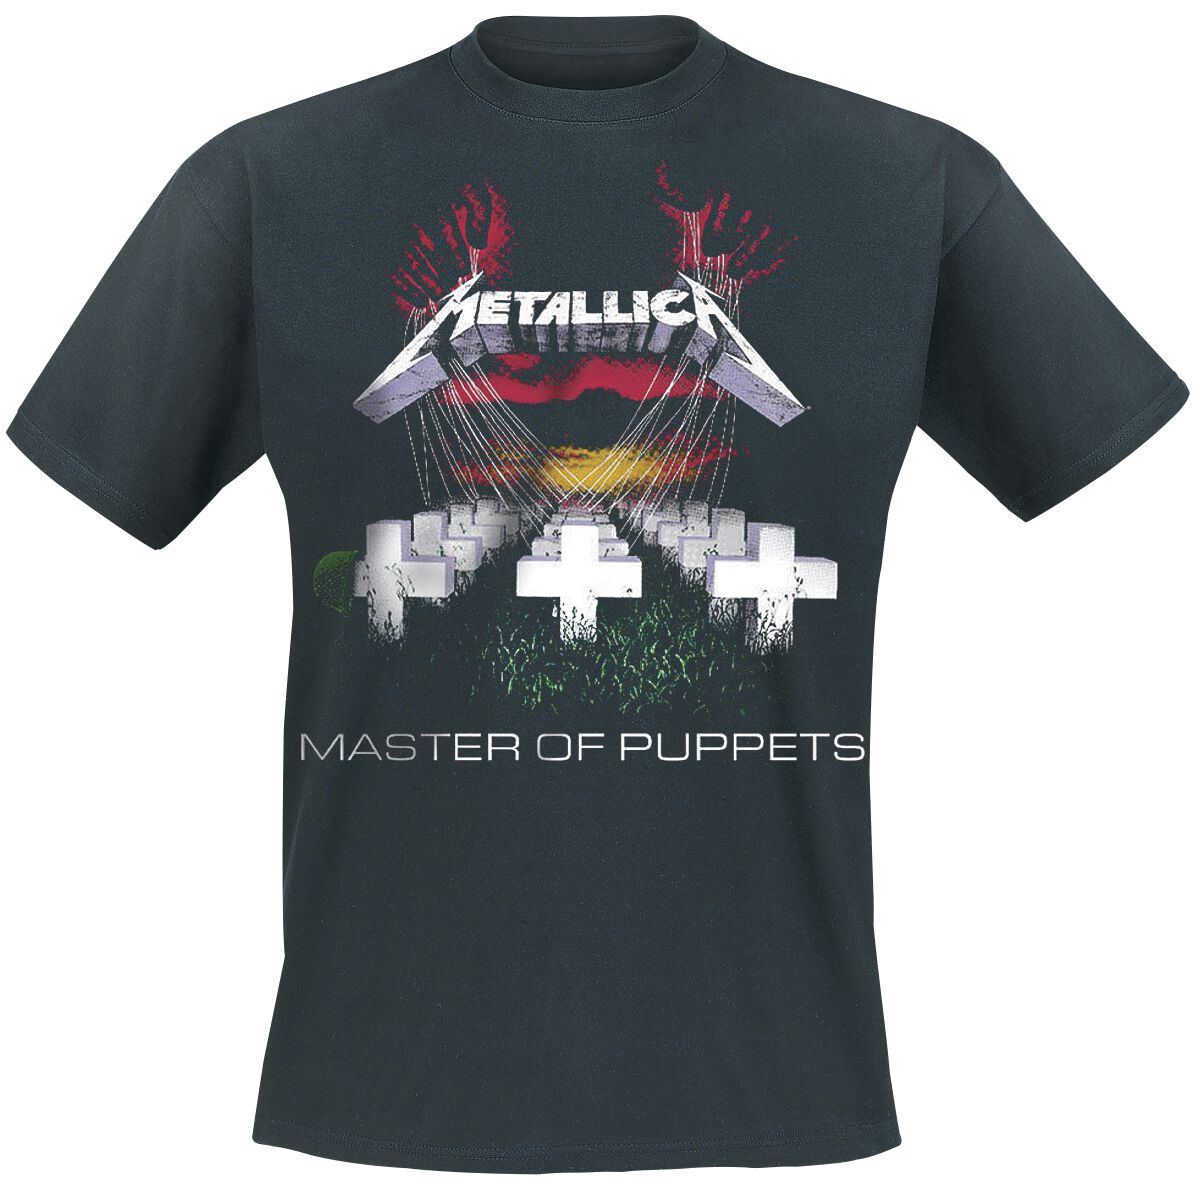 Metallica T-Shirt - Master Of Puppets - S bis 5XL - für Männer - Größe 5XL - schwarz  - Lizenziertes Merchandise!